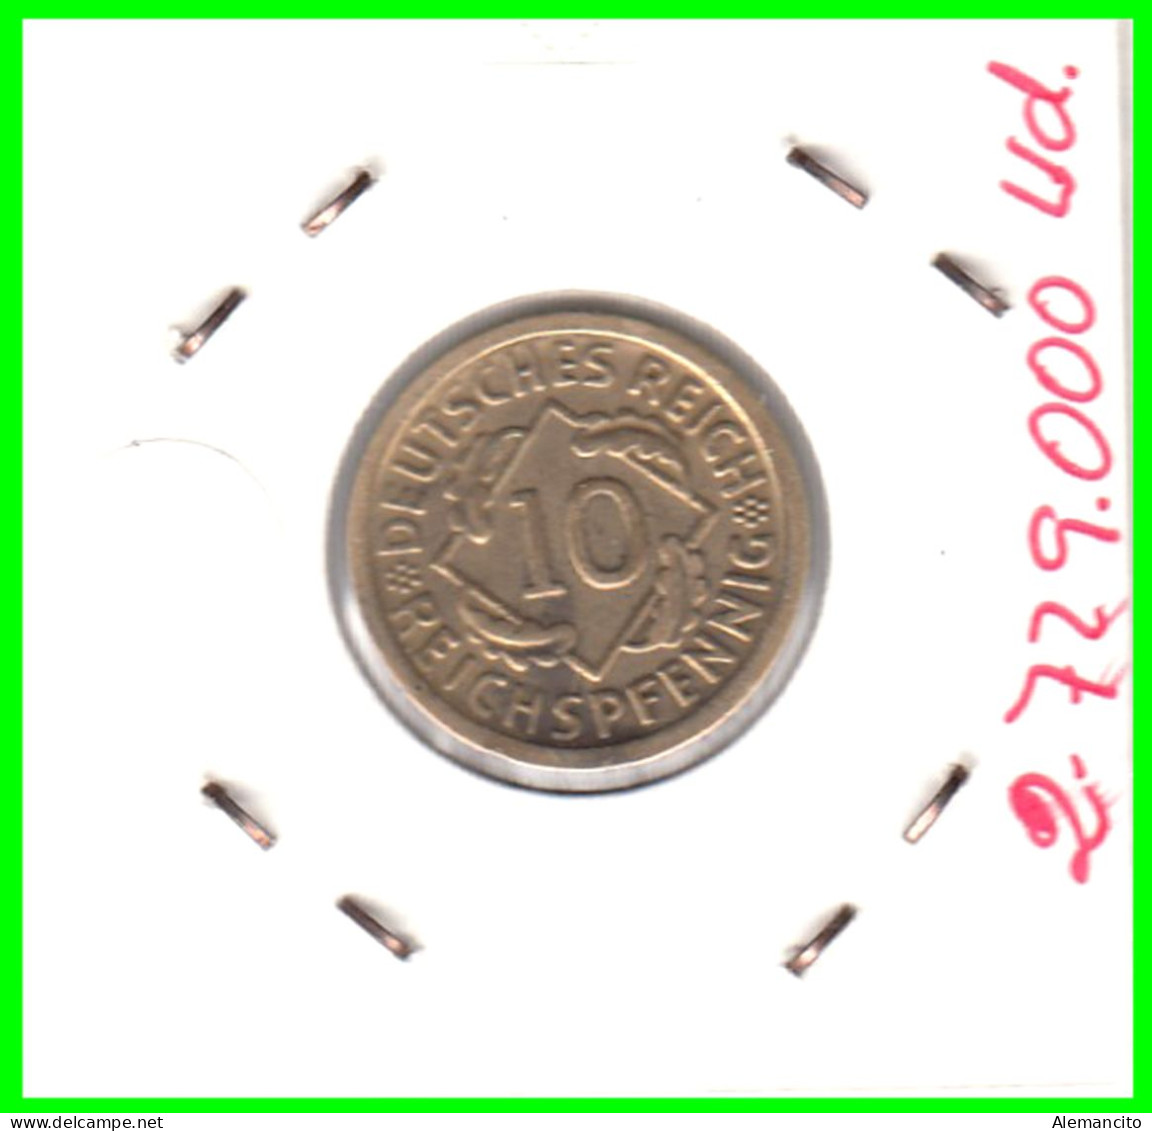 GERMANY REPÚBLICA DE WEIMAR 10 PFENNIG DE PENSIÓN ( 1929 CECA - G ) MONEDA DEL AÑO 1923-1936 (RENTENPFENNIG KM # 32 - 10 Renten- & 10 Reichspfennig